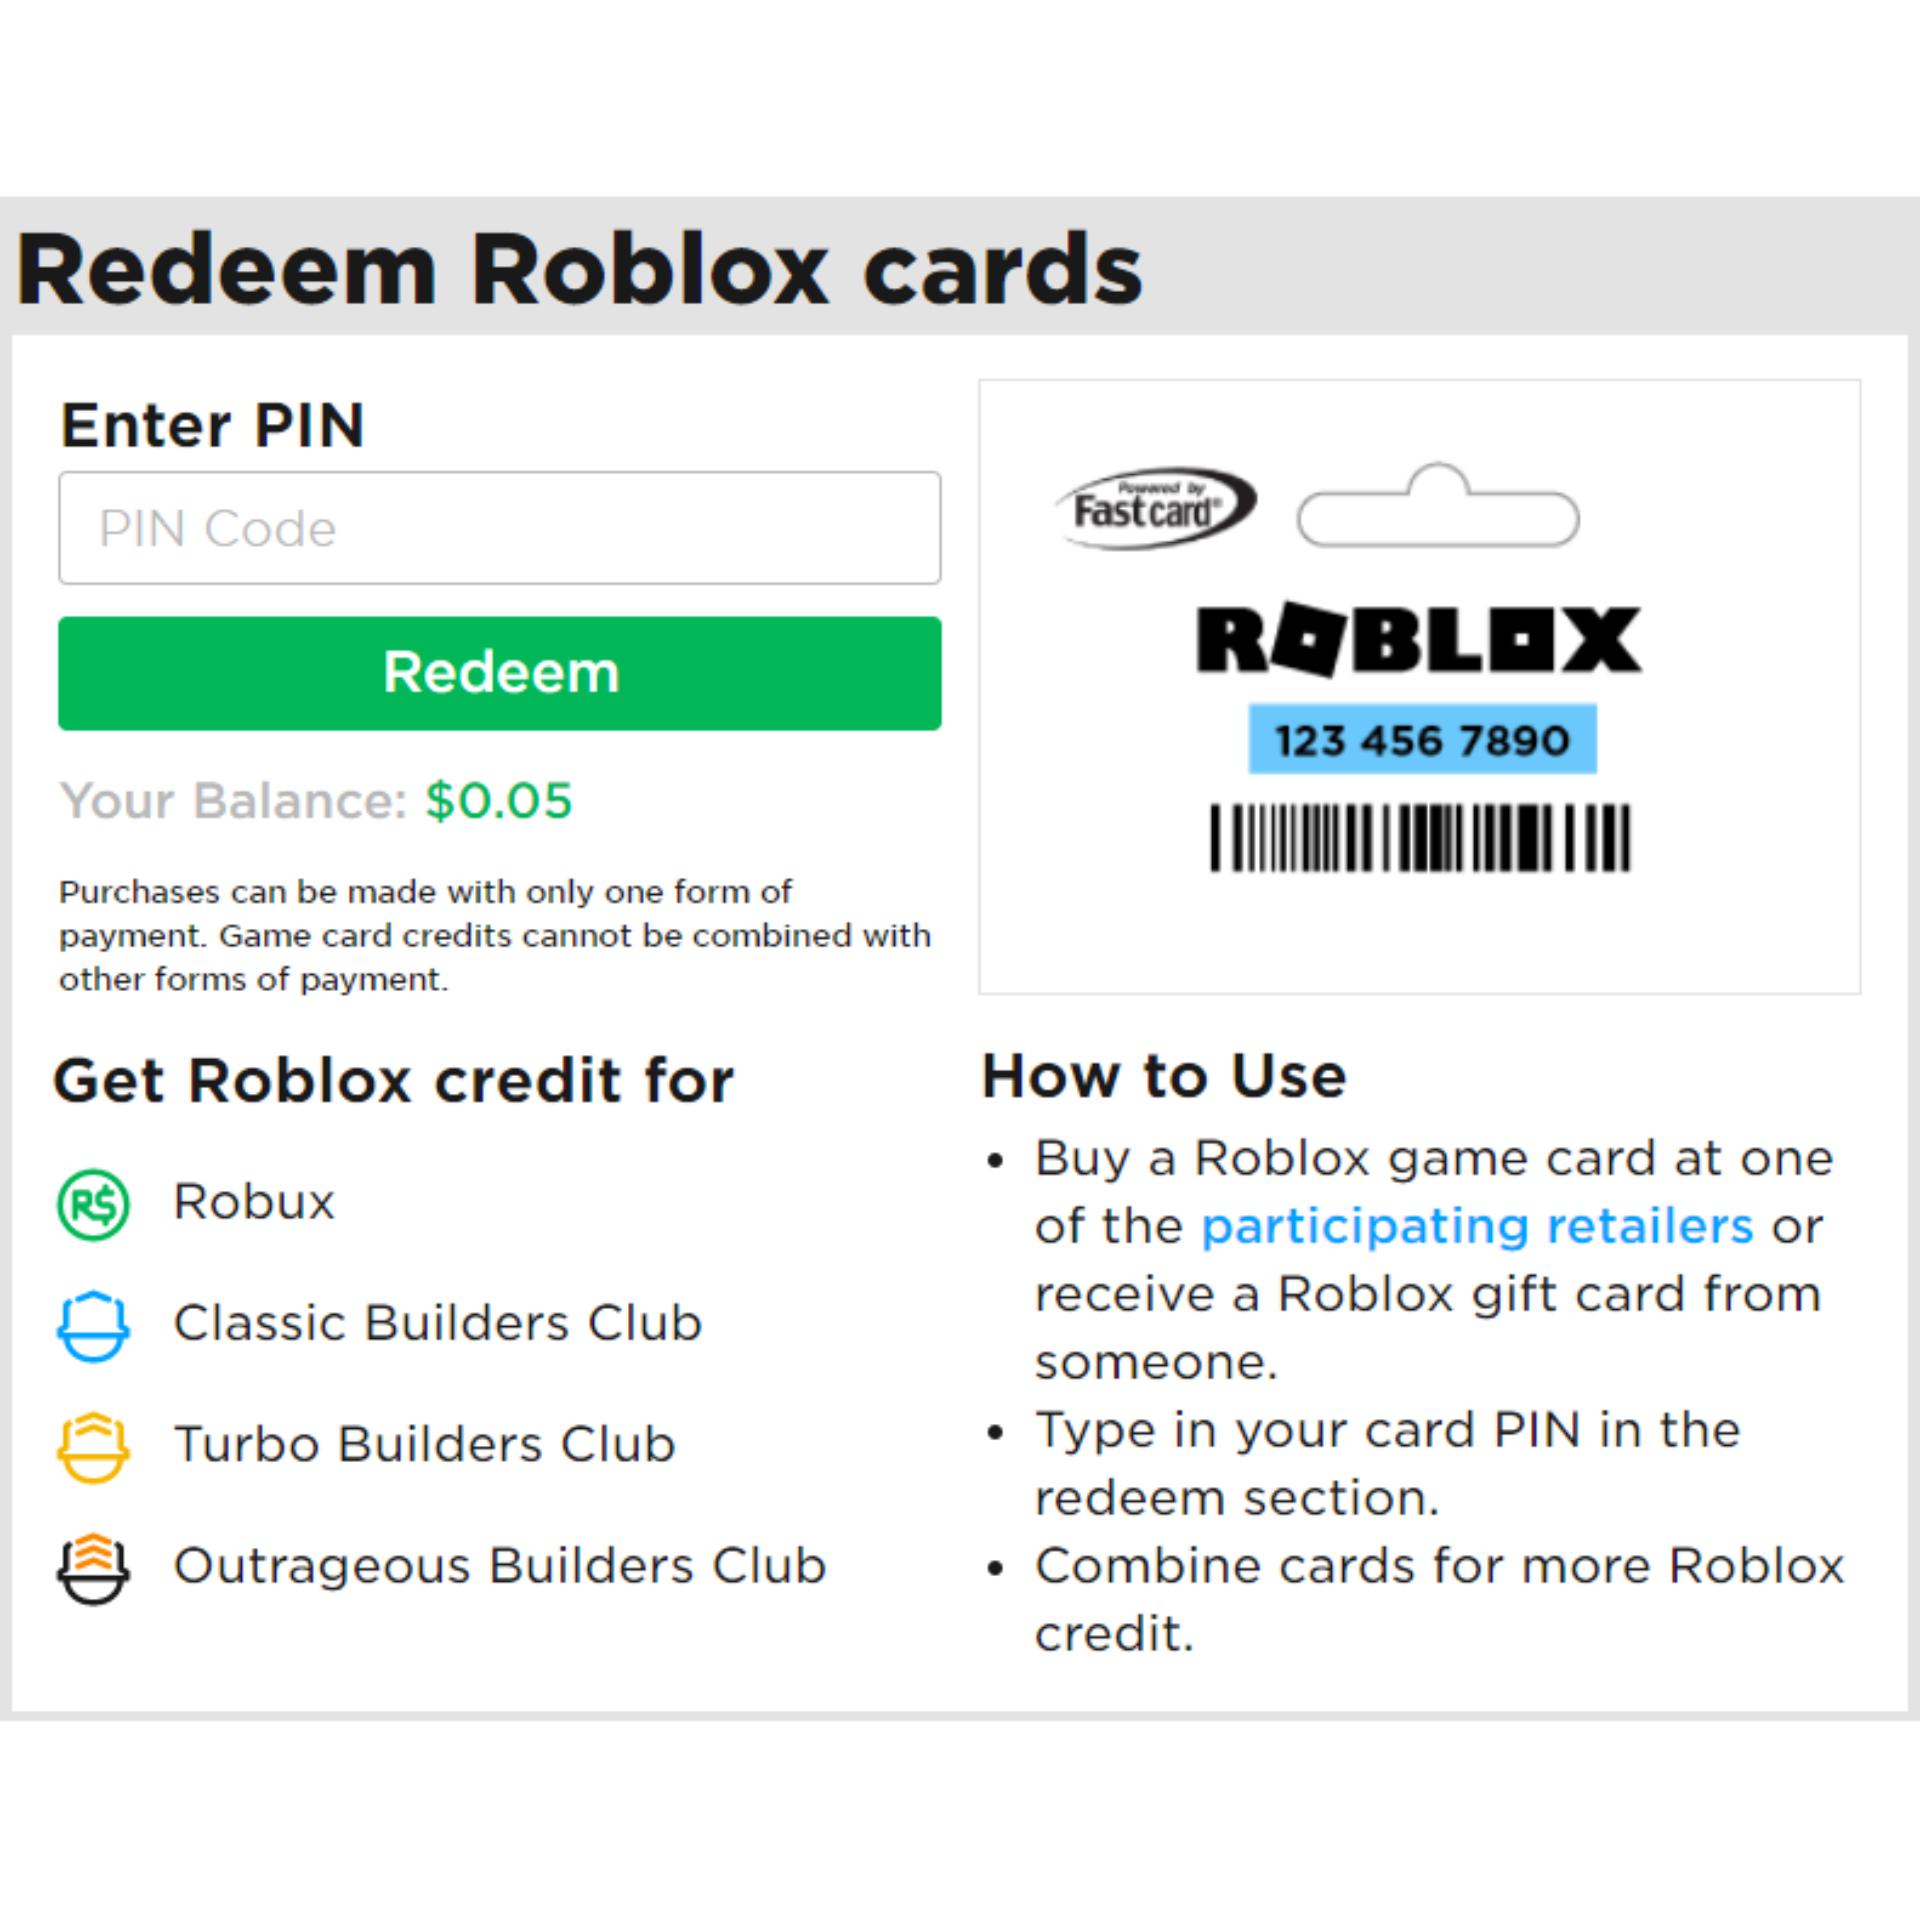 Roblox Xbox Error 103